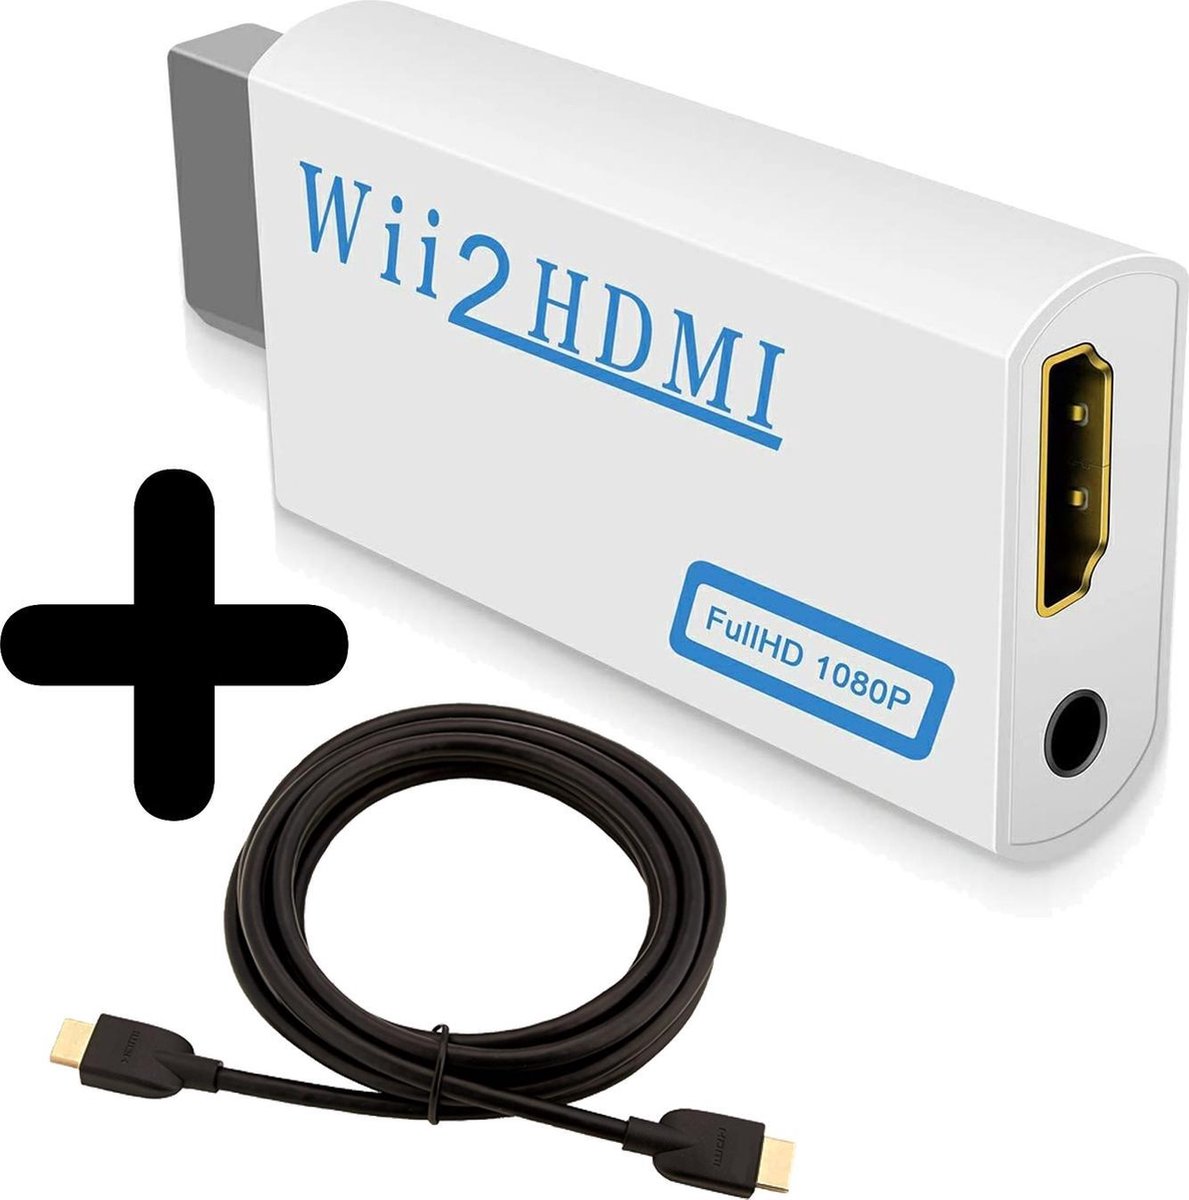 Regulatie Overtreding Echt niet Wii naar HDMI Adapter Converter 1080p Full HD Kwaliteit Met HDMI Kabel |  bol.com